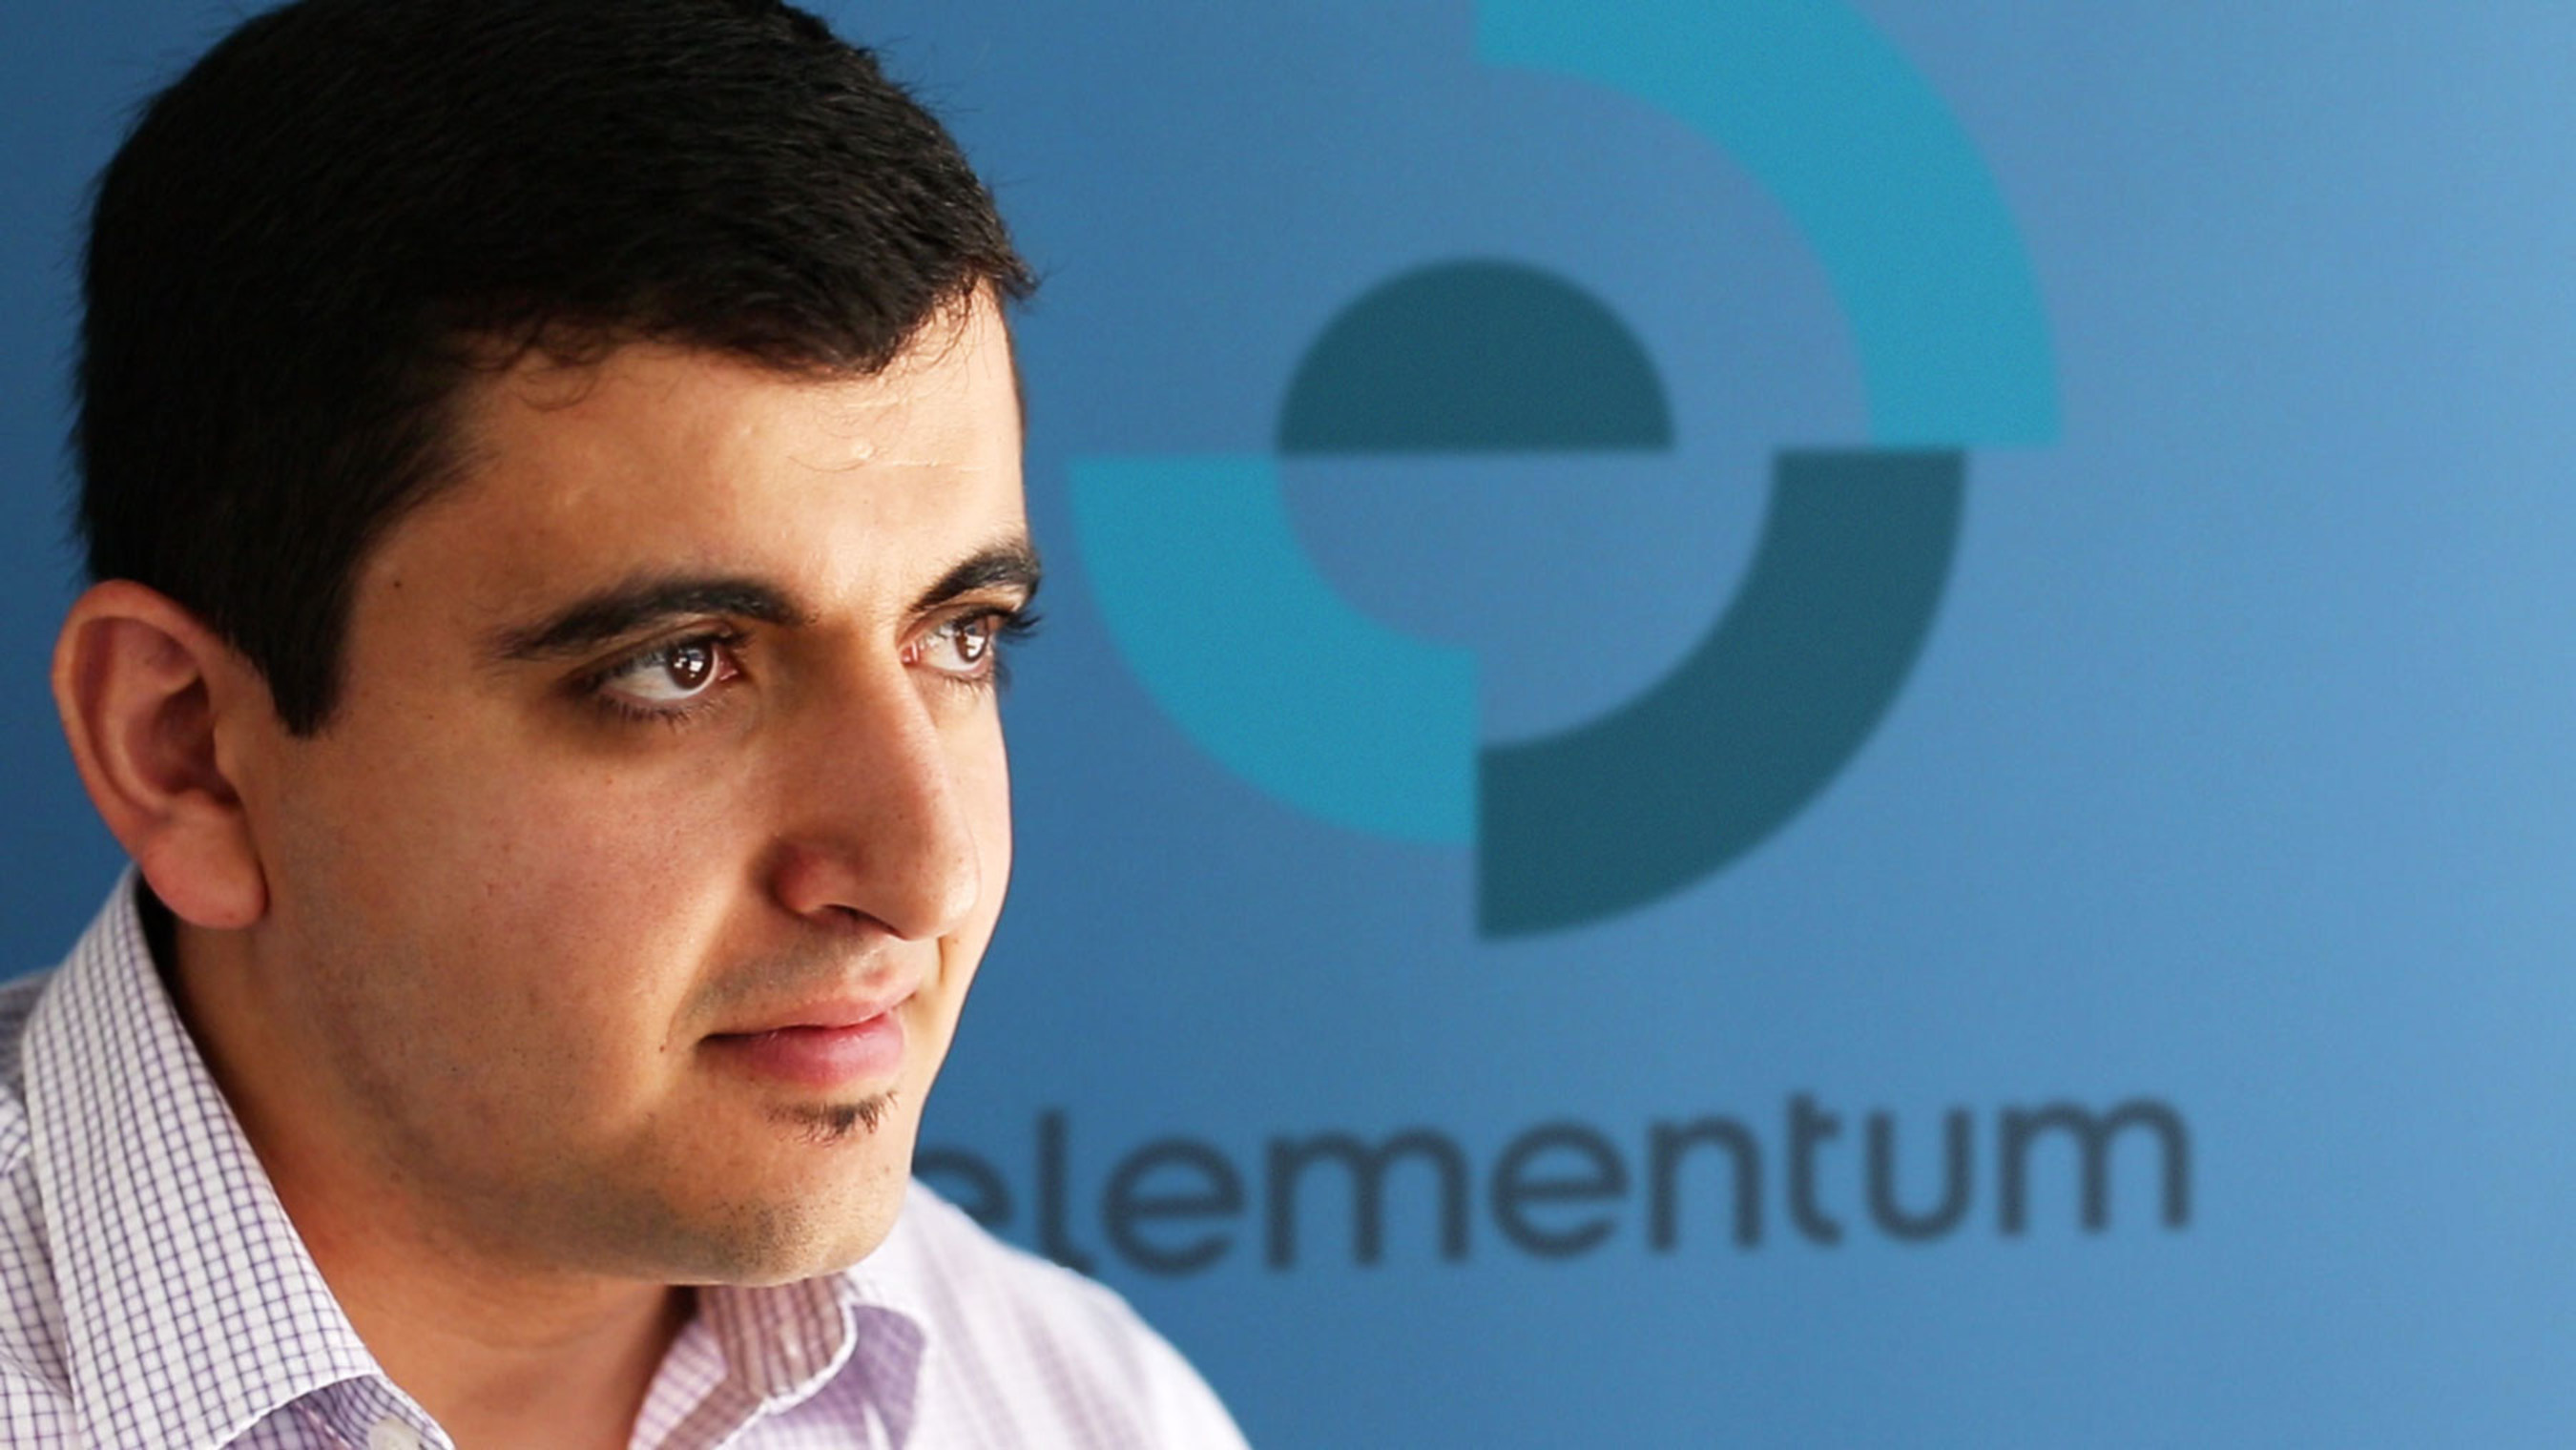 Elementum CEO Nader Mikhail to speak at Box Dev 2015